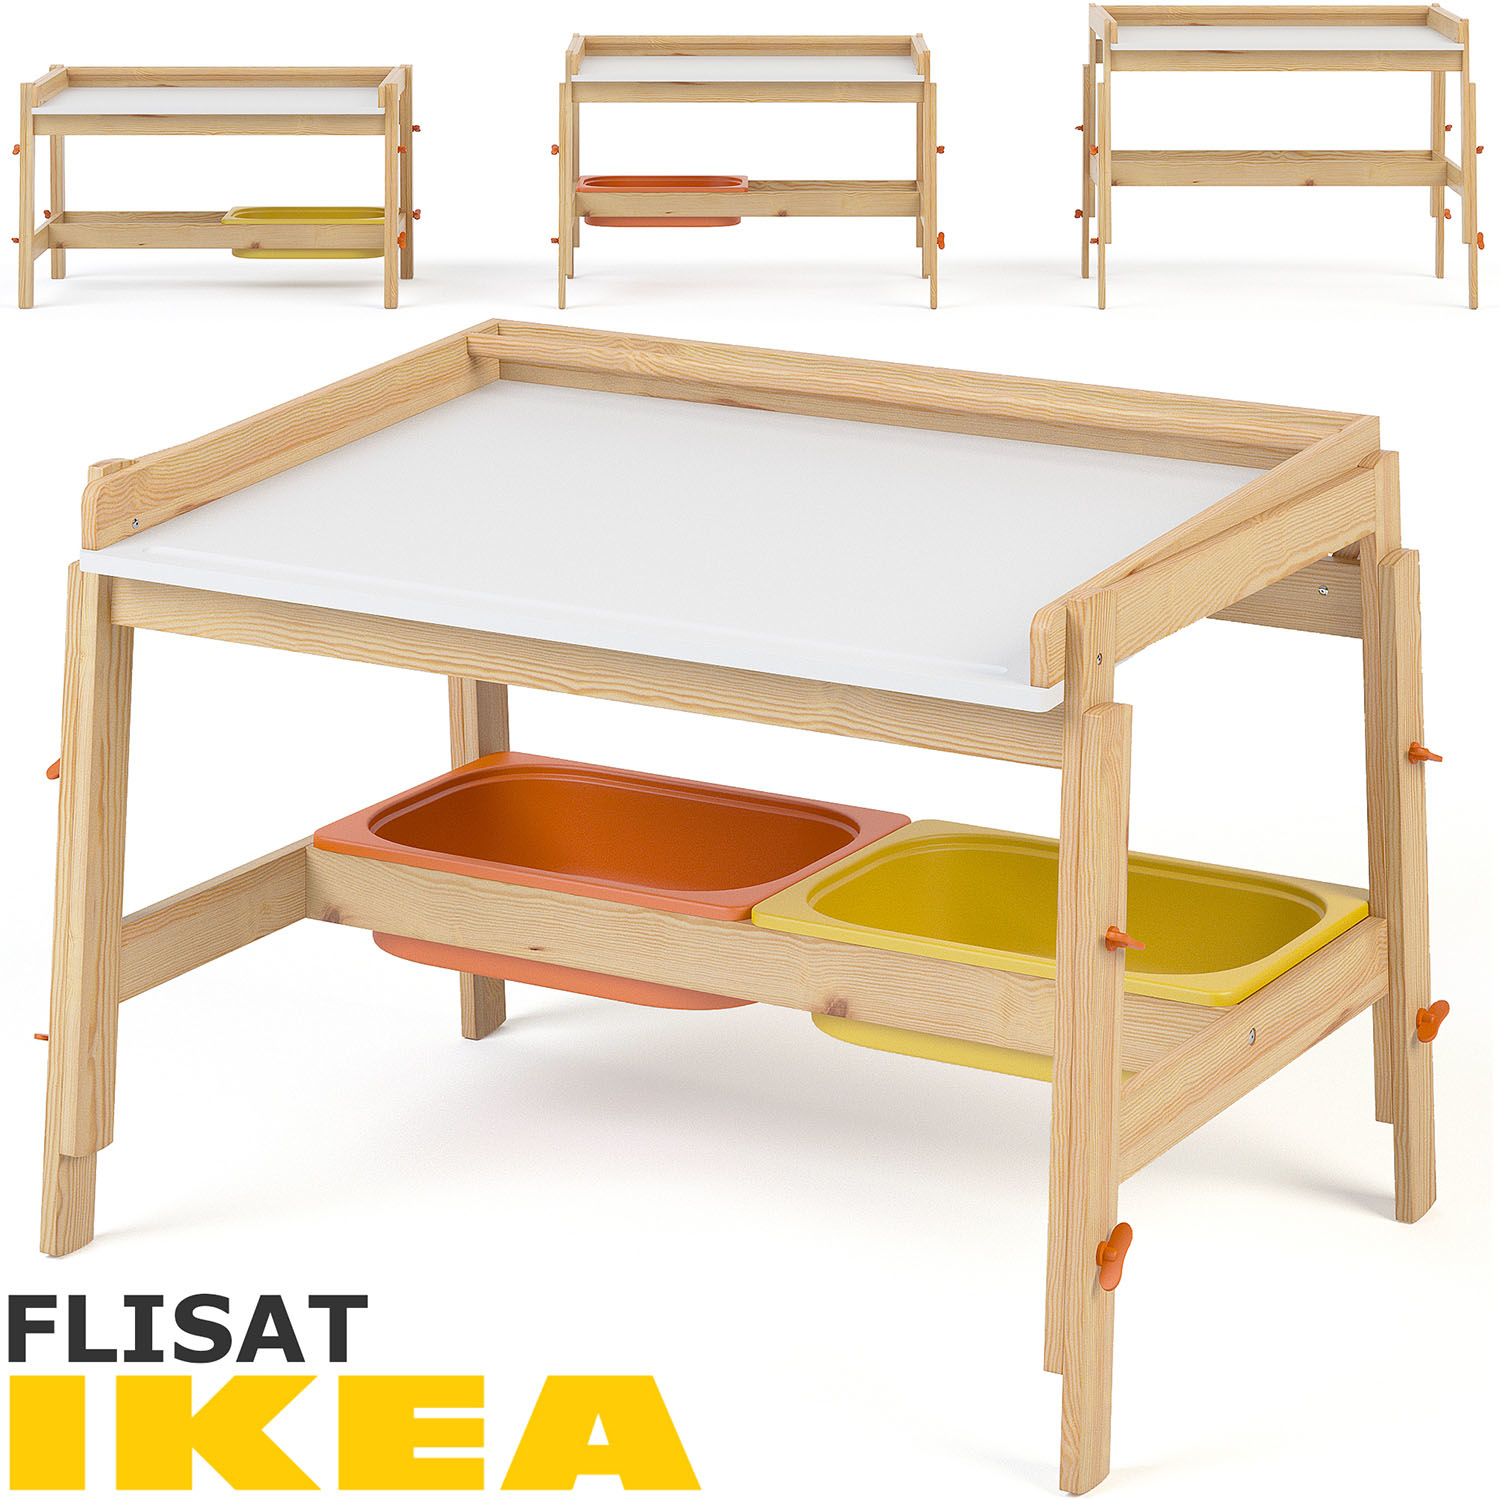 3d Ikea Flisat Child Desk Model Turbosquid 1270132